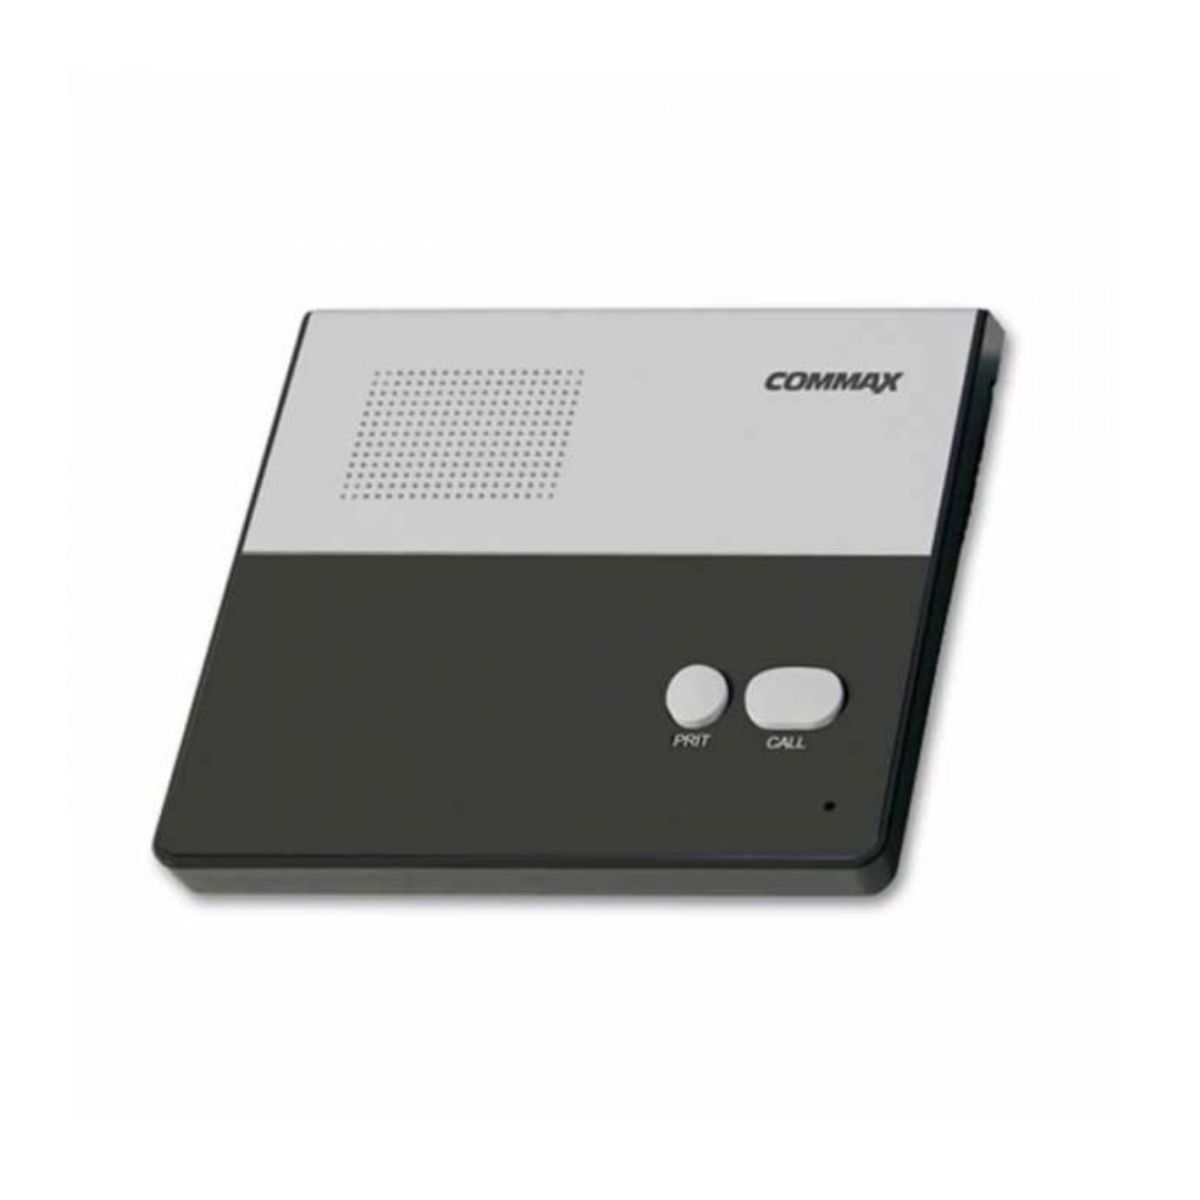 Điện thoại nội bộ không tay nghe Commax CM-800S (máy con ), gọi và đàm thoại với máy chủ CM-810